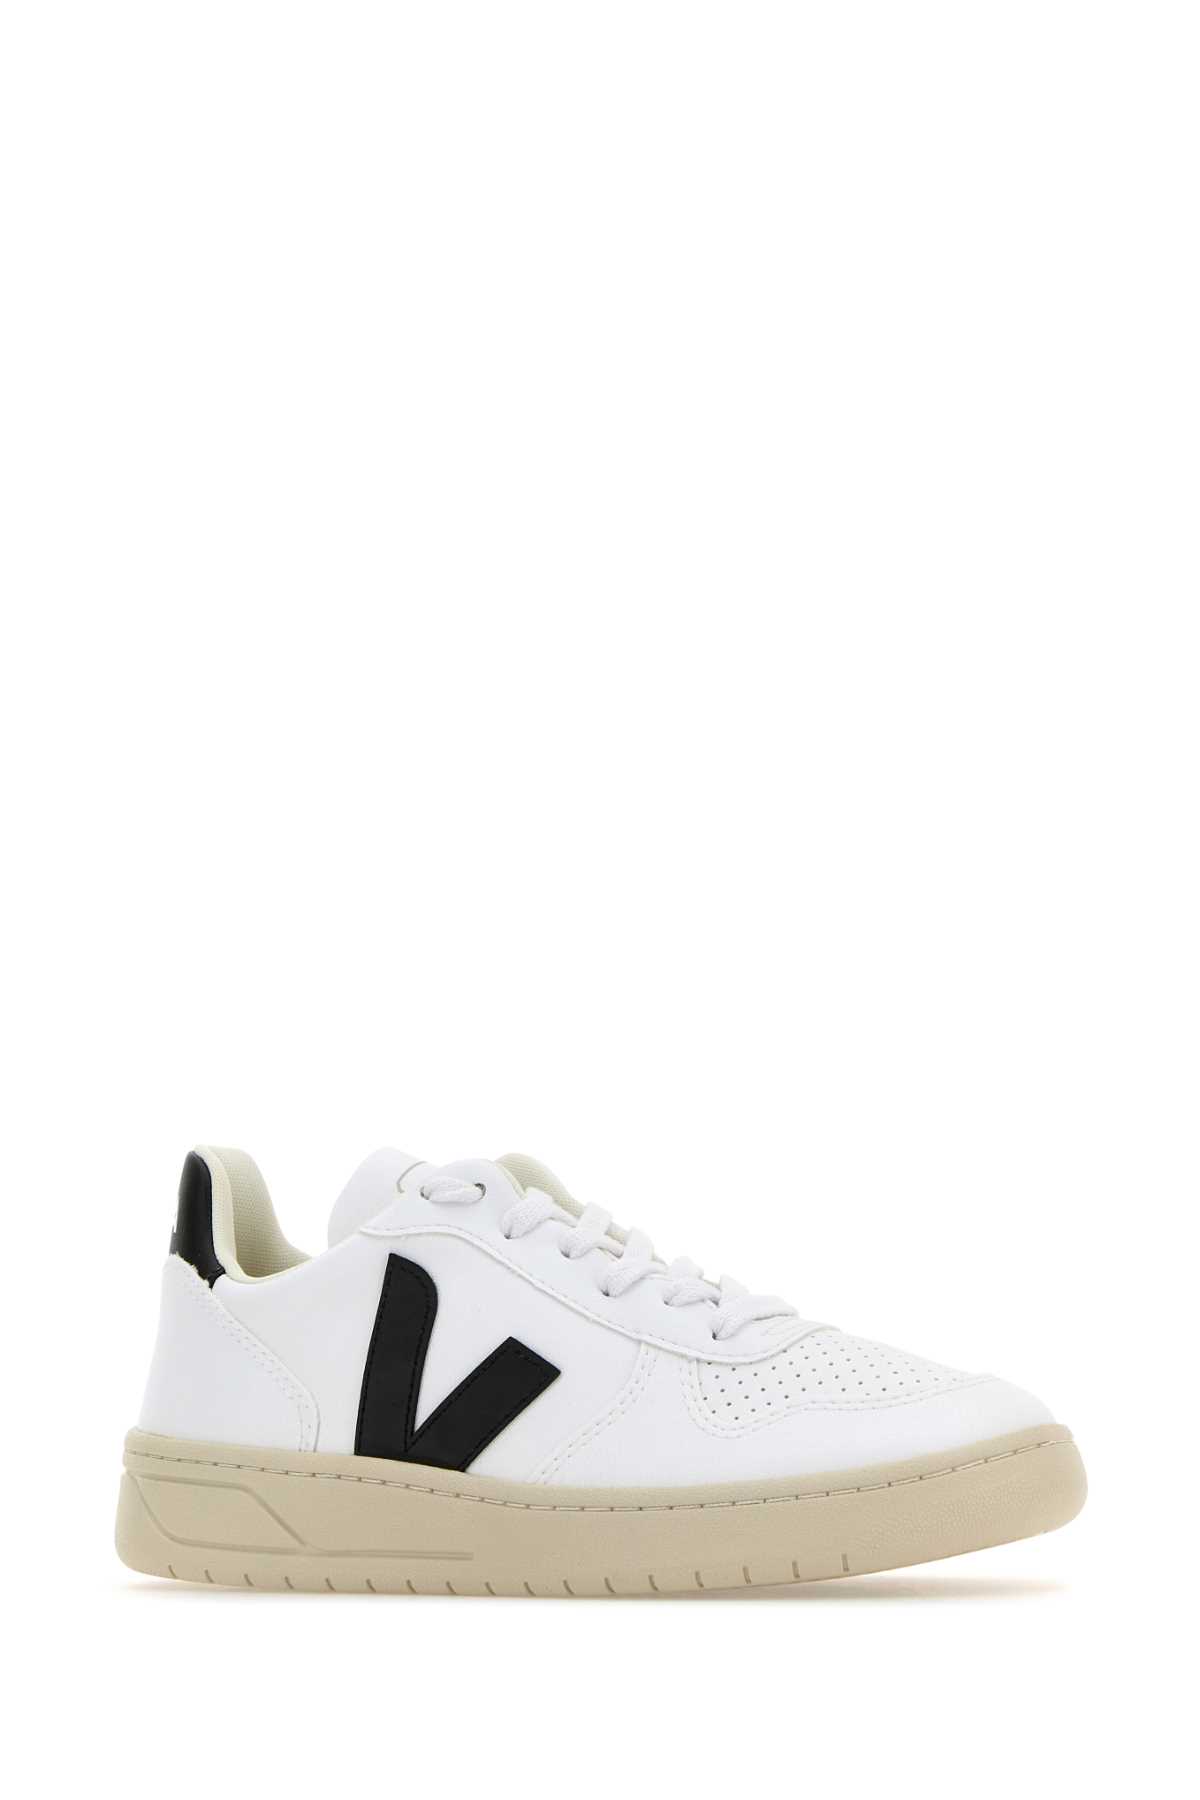 Shop Veja White Leather V-10 Sneakers In Whiteblack